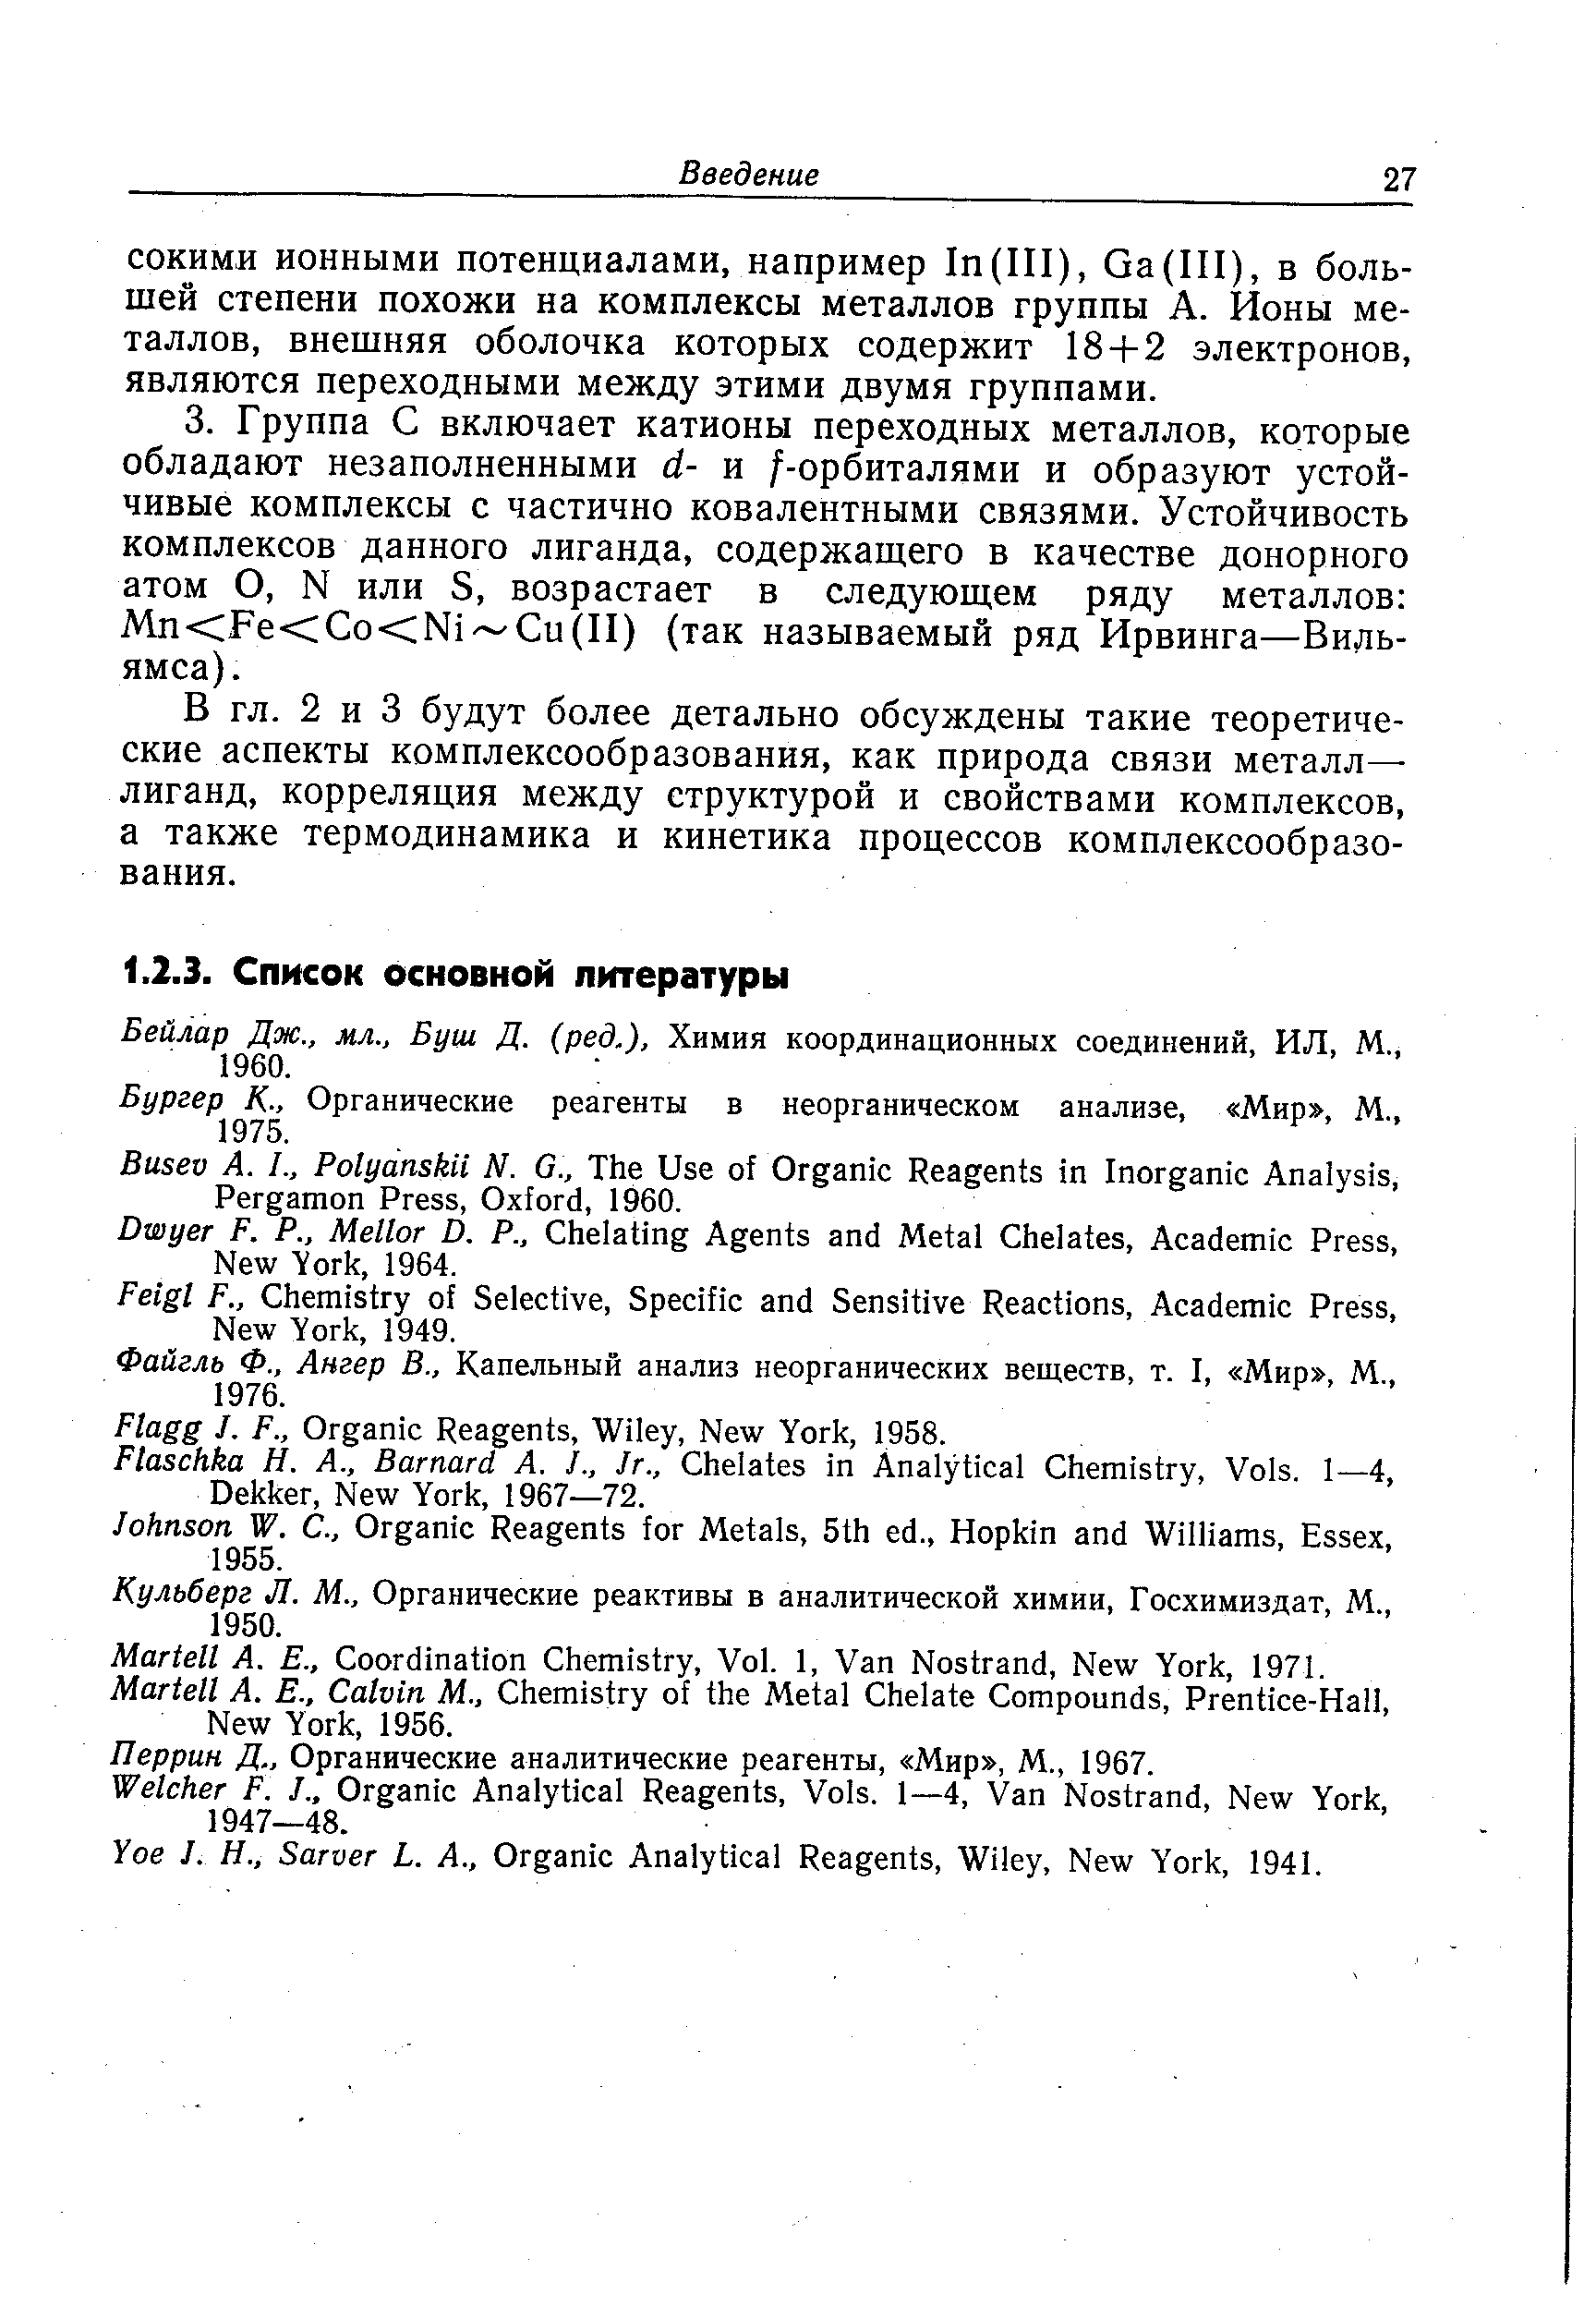 Кульберг Л. М., Органические реактивы в аналитической химии, Госхимиздат, М., 1950.